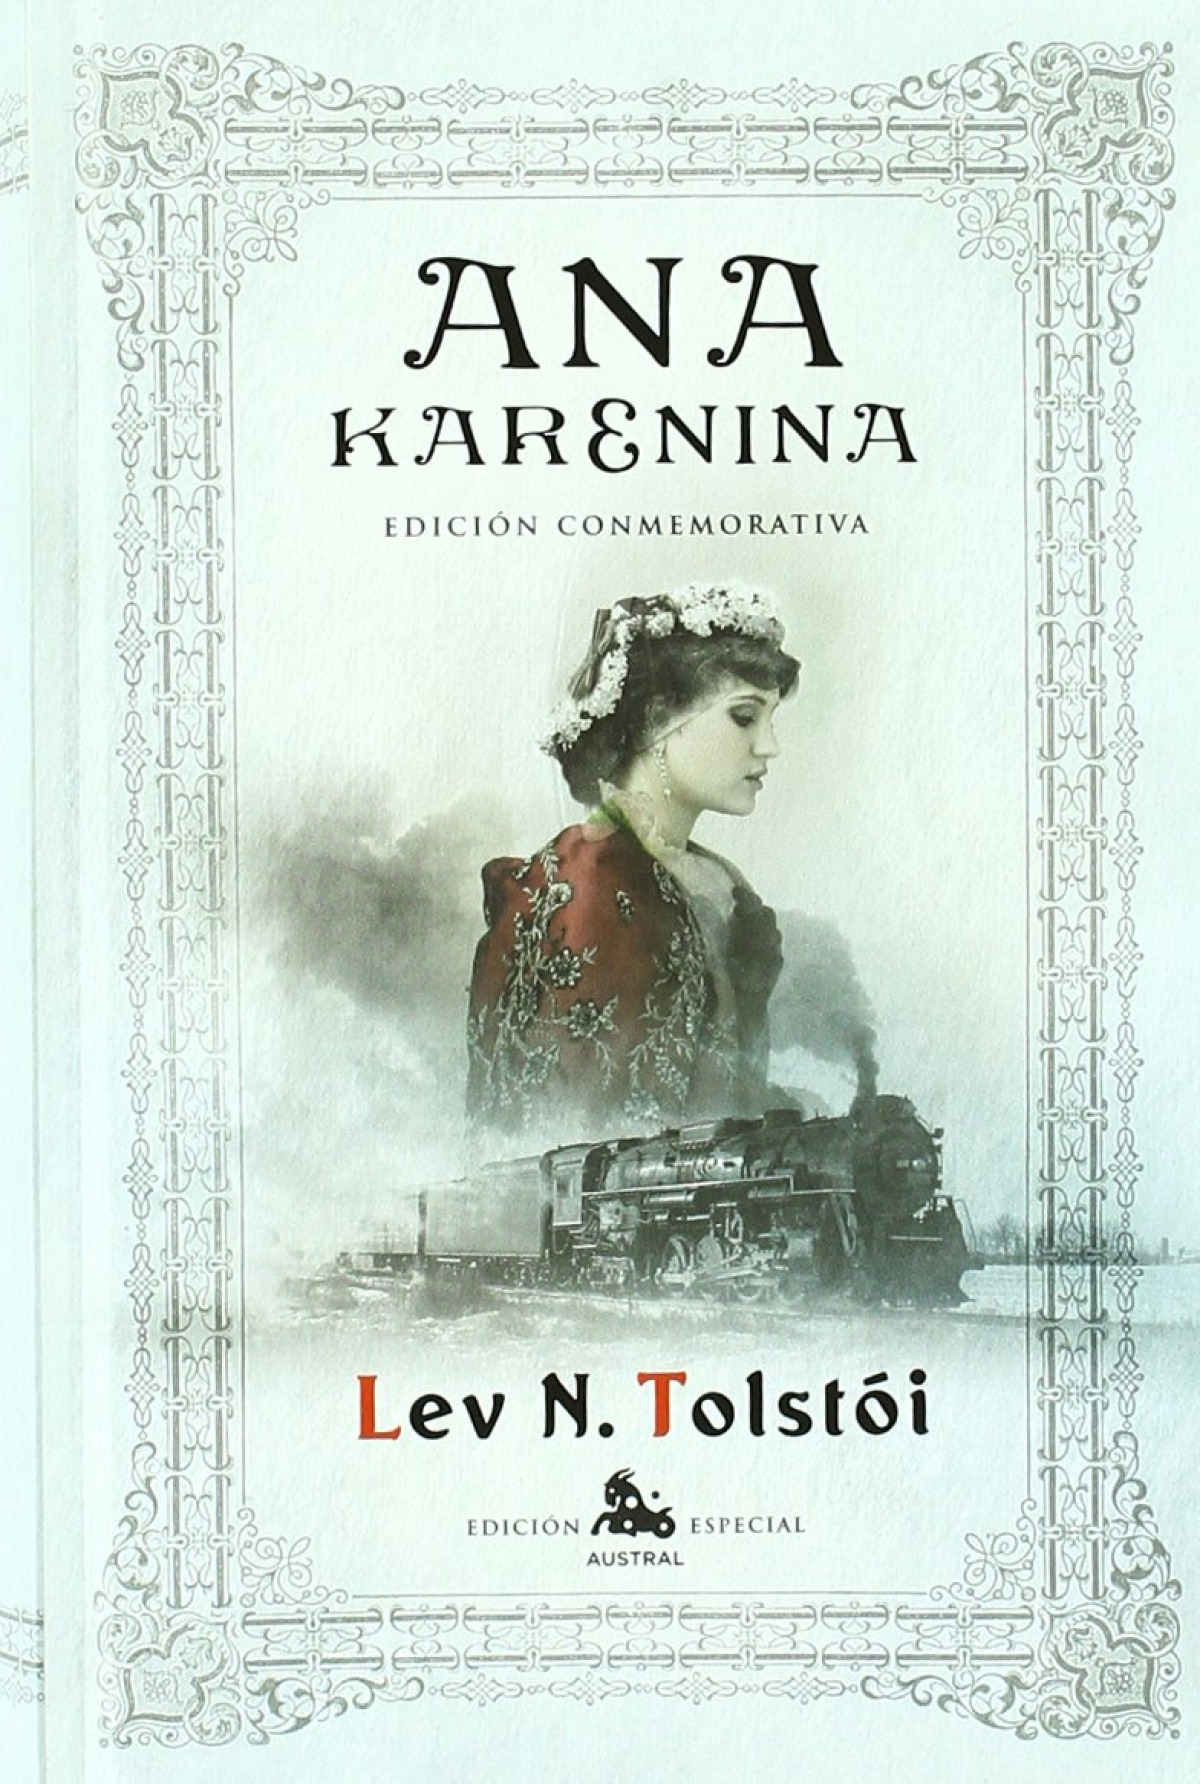 Ana Karenina - León Tolstoi